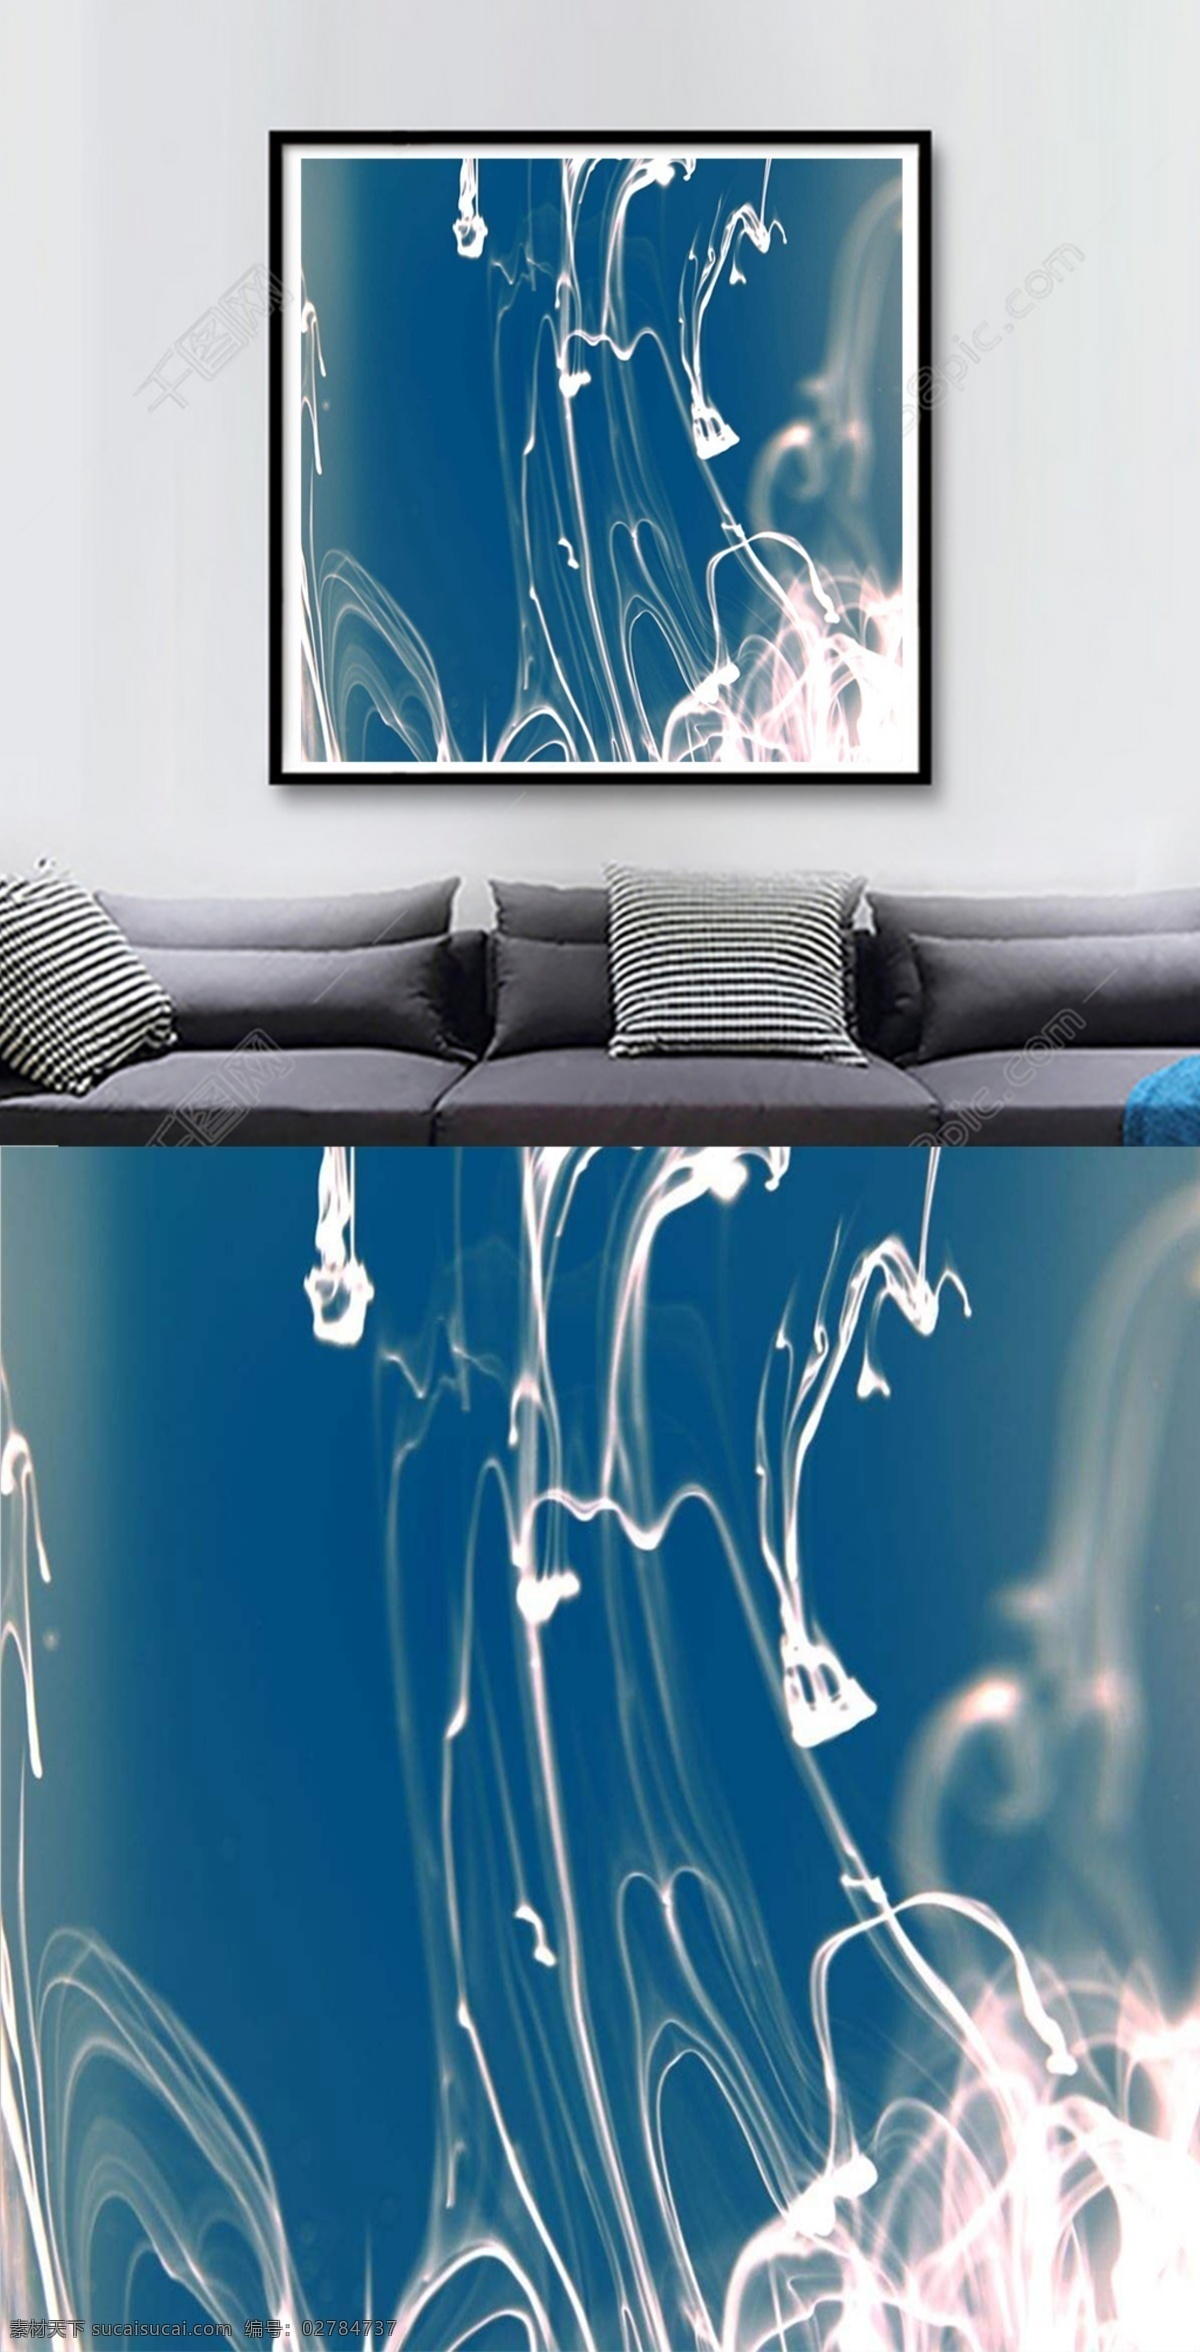 方 图 蓝白 相间 墨 染 艺术 客厅 装饰画 白 抽象 方图 个性 蓝 墨染 现代